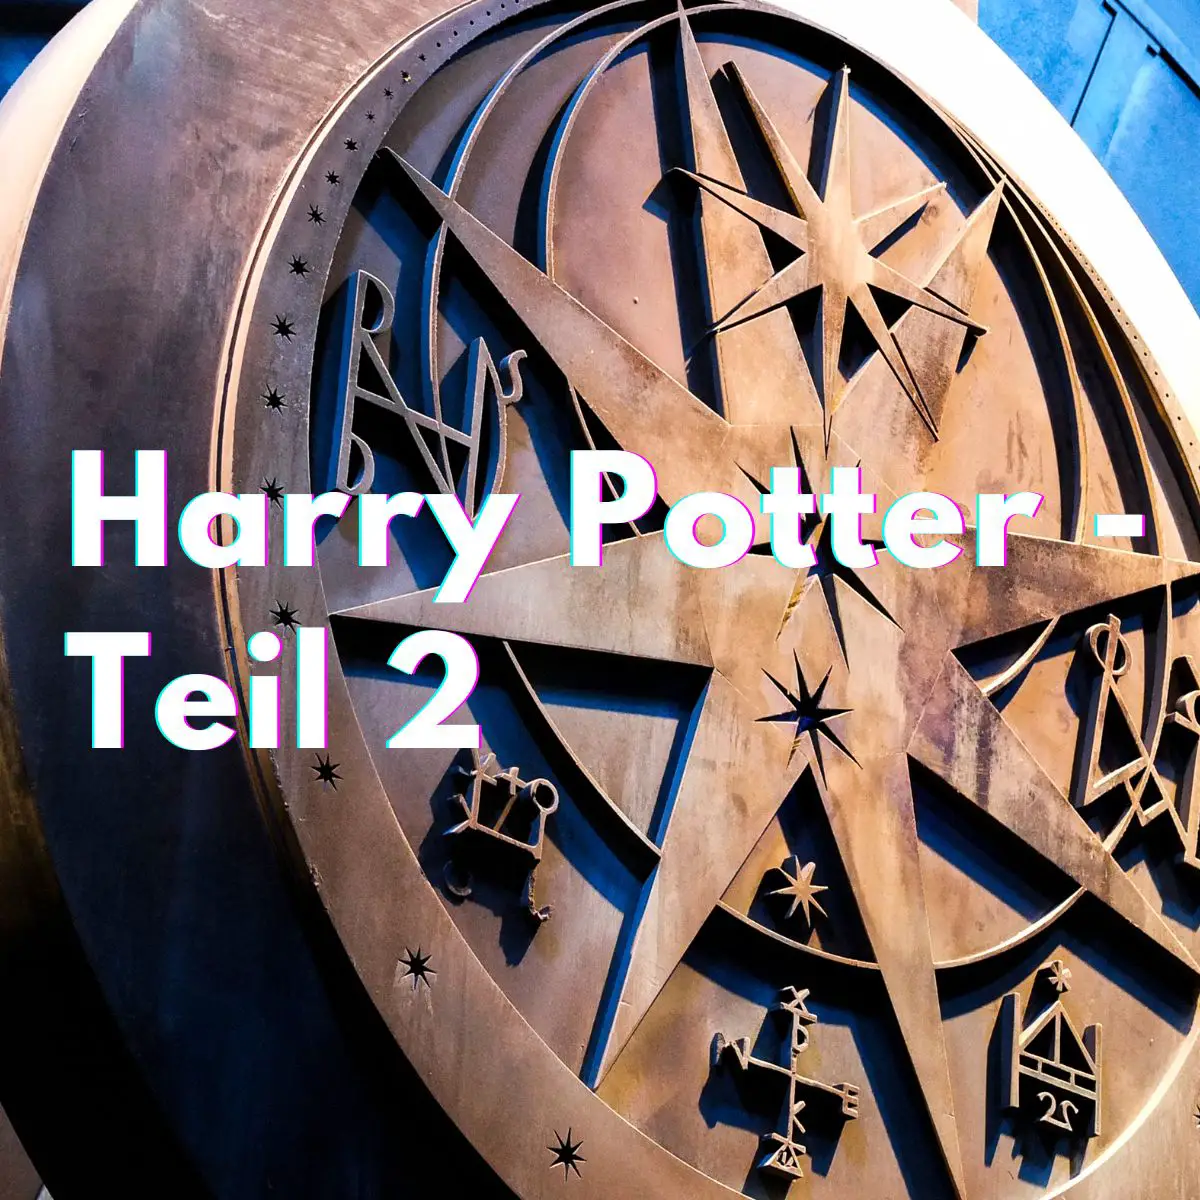 Zauberhaftes Symbol mit der Schrift "Harry Potter - Teil 2.